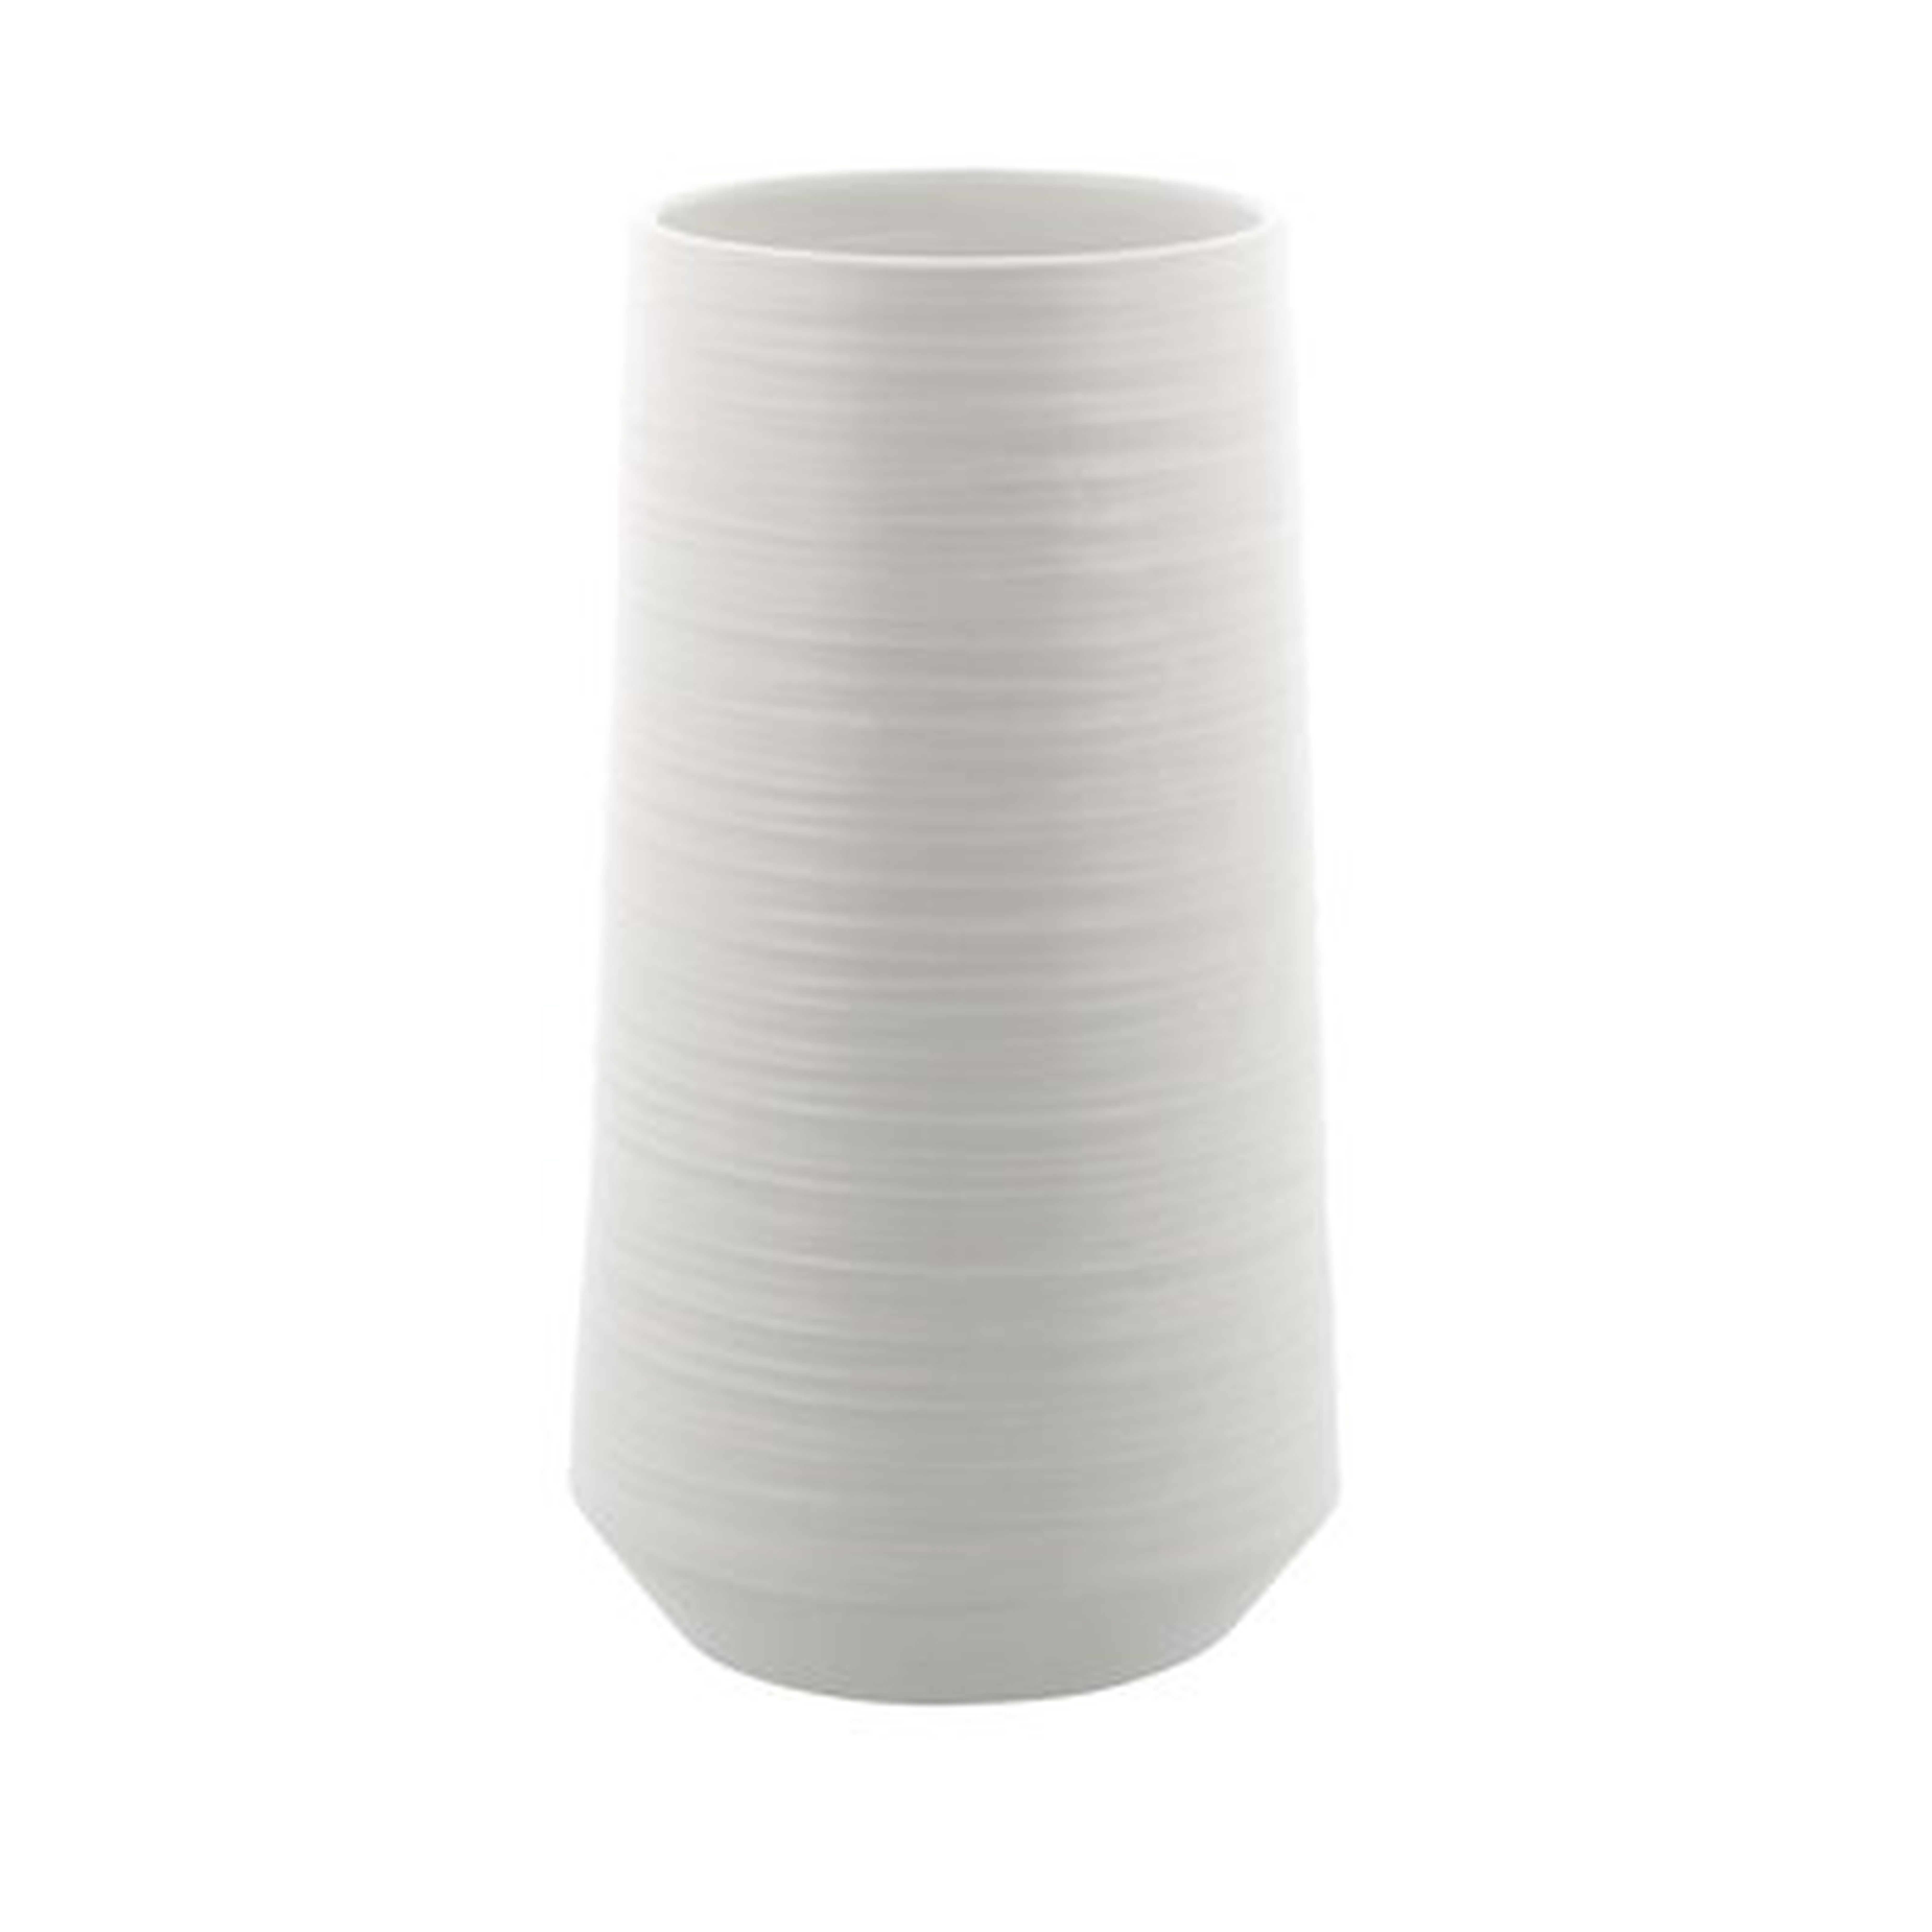 Diez Matte Porcelain Pear-Shaped Table Vase - Wayfair